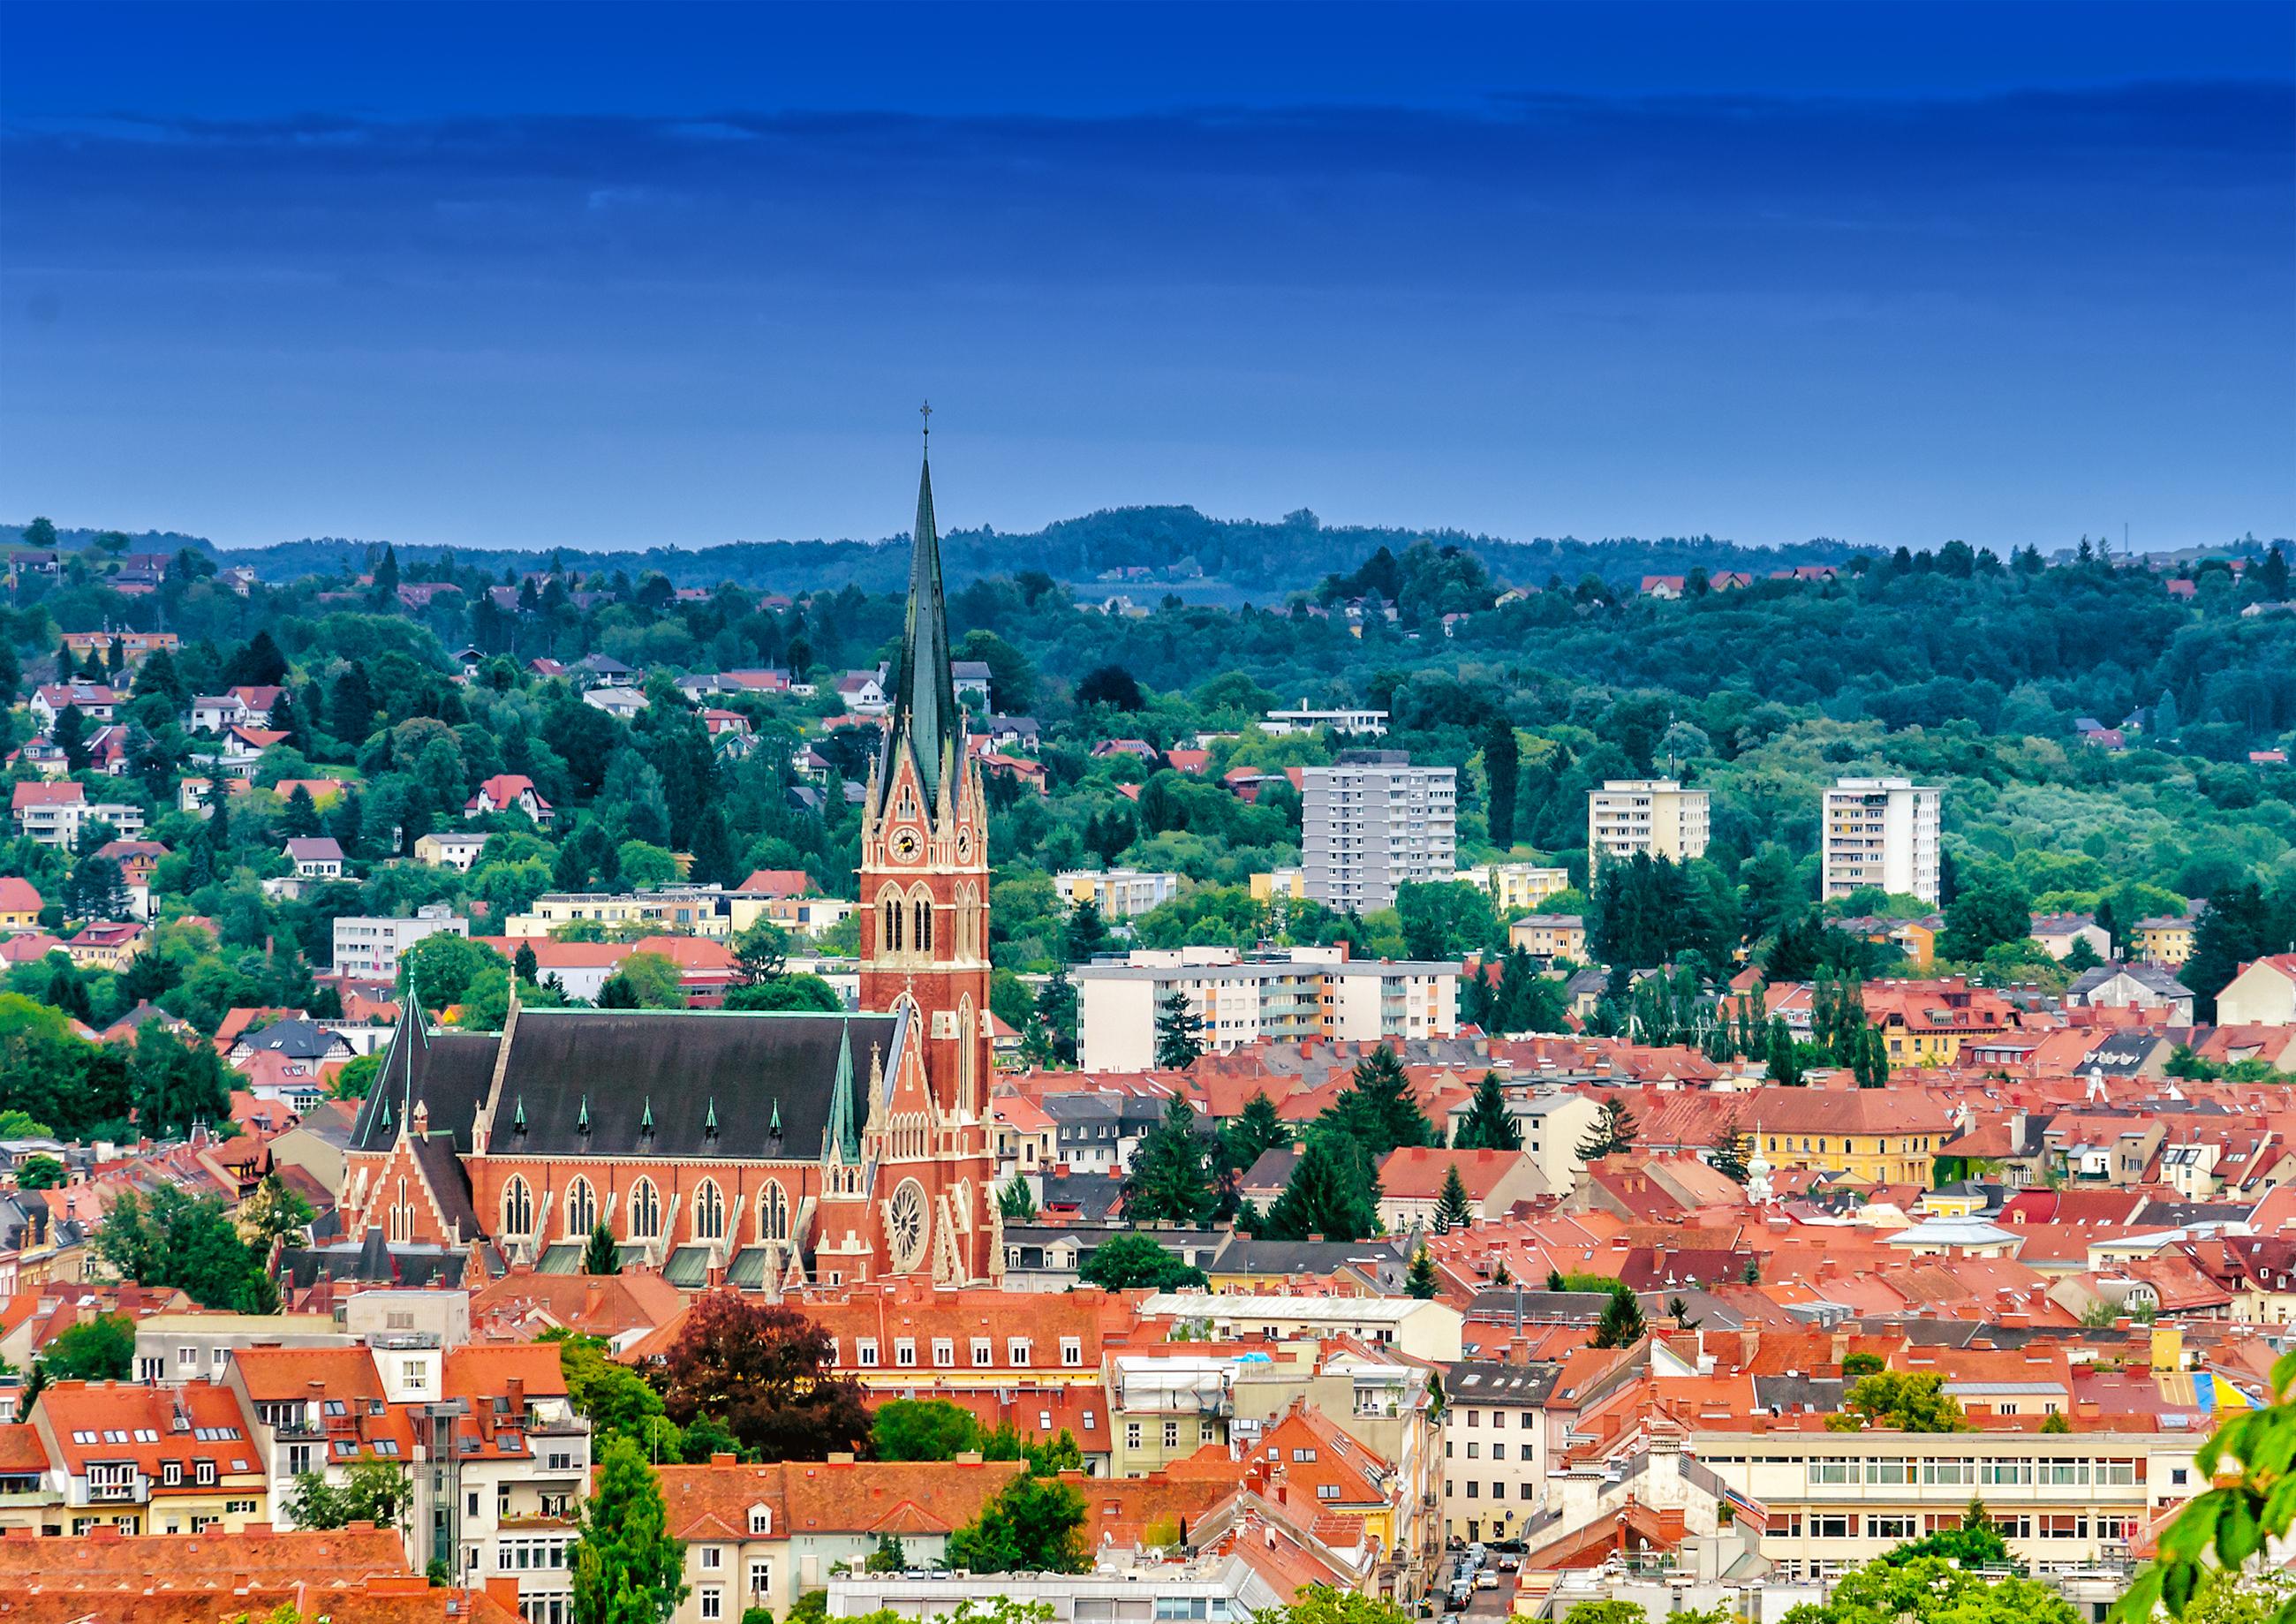 The Graz city, cover photo